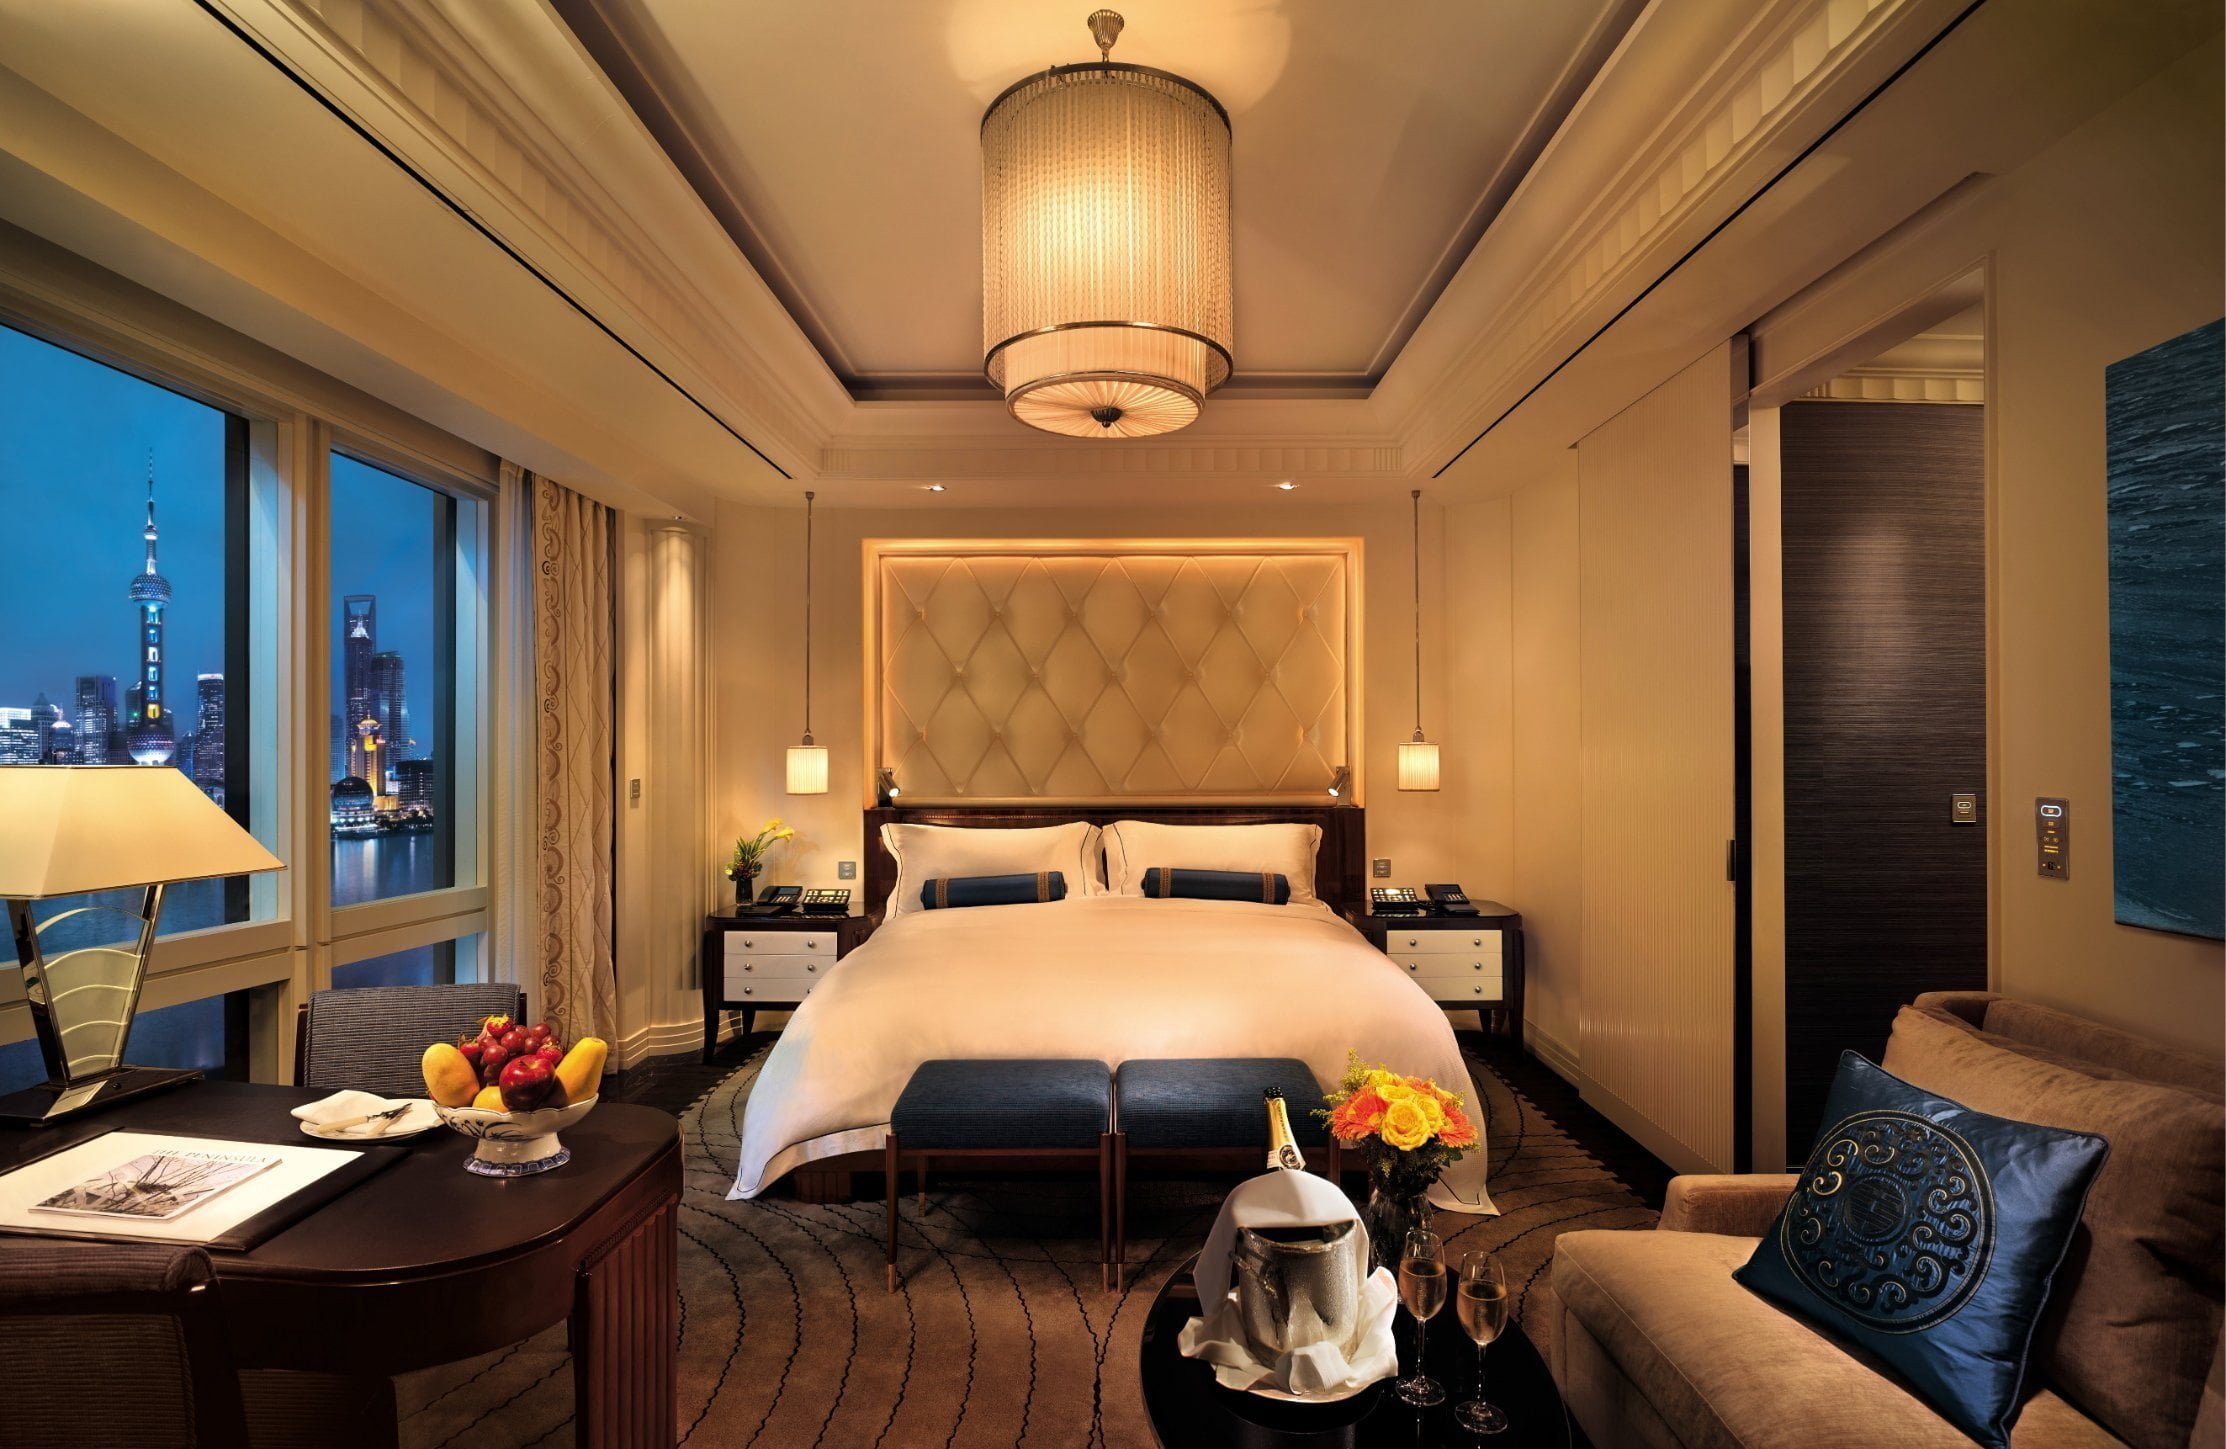 45 New Dekorasi Kamar Tidur Seperti Hotel Yang Wajib Kamu Ketahui